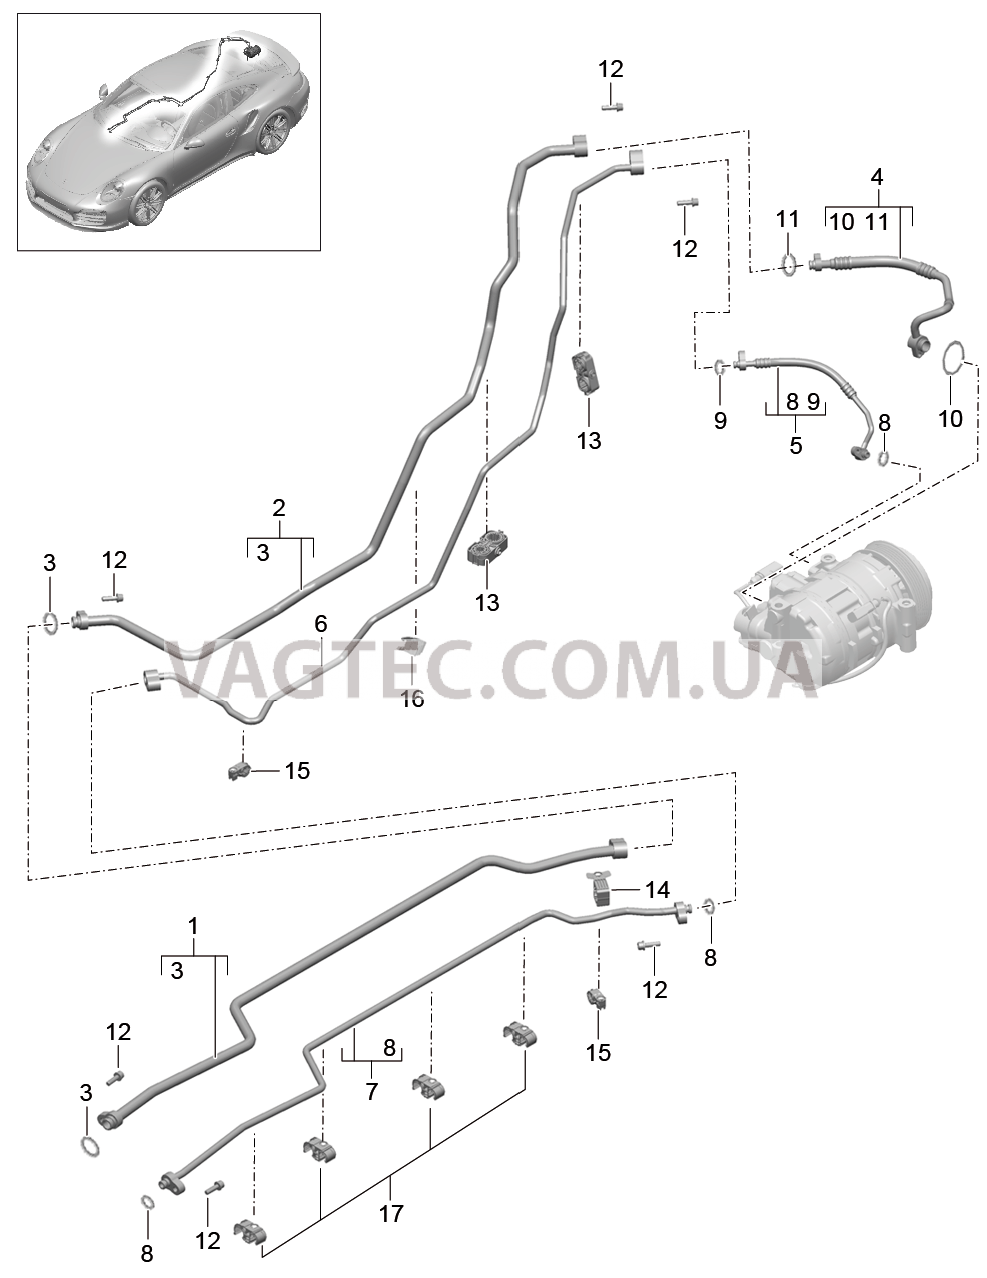 813-025 Циркуляция охлаждающей жидкости, Днище кузова, и, Задняя подвеска для PORSCHE Porsche991Turbo 2014-2017